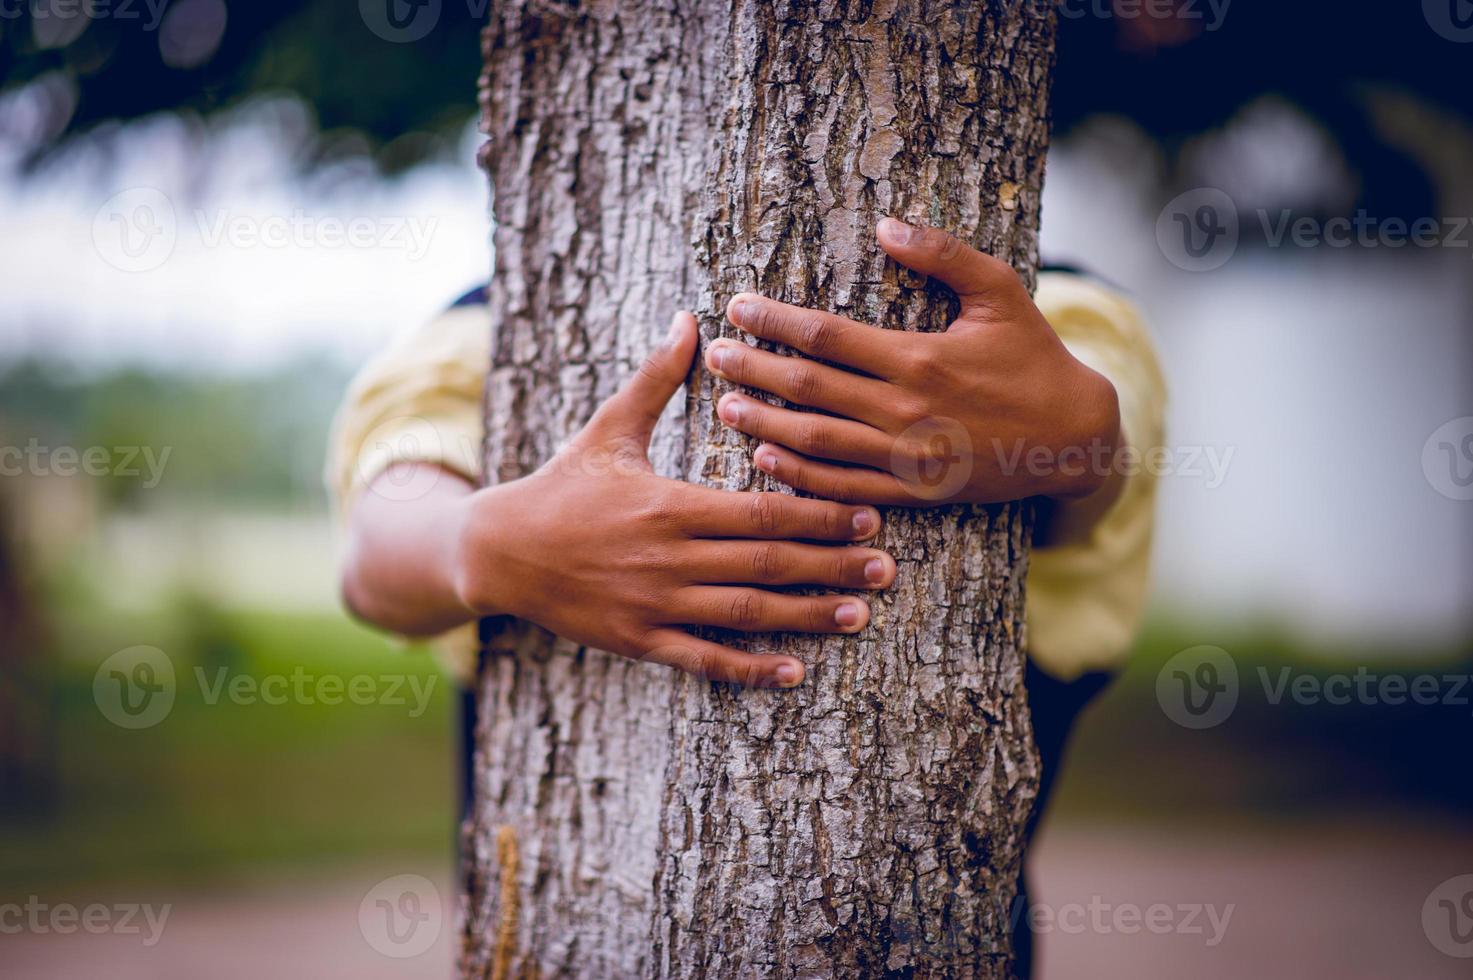 bilden har omfamnat träden av unga män som älskar naturen. naturlig vård koncept foto